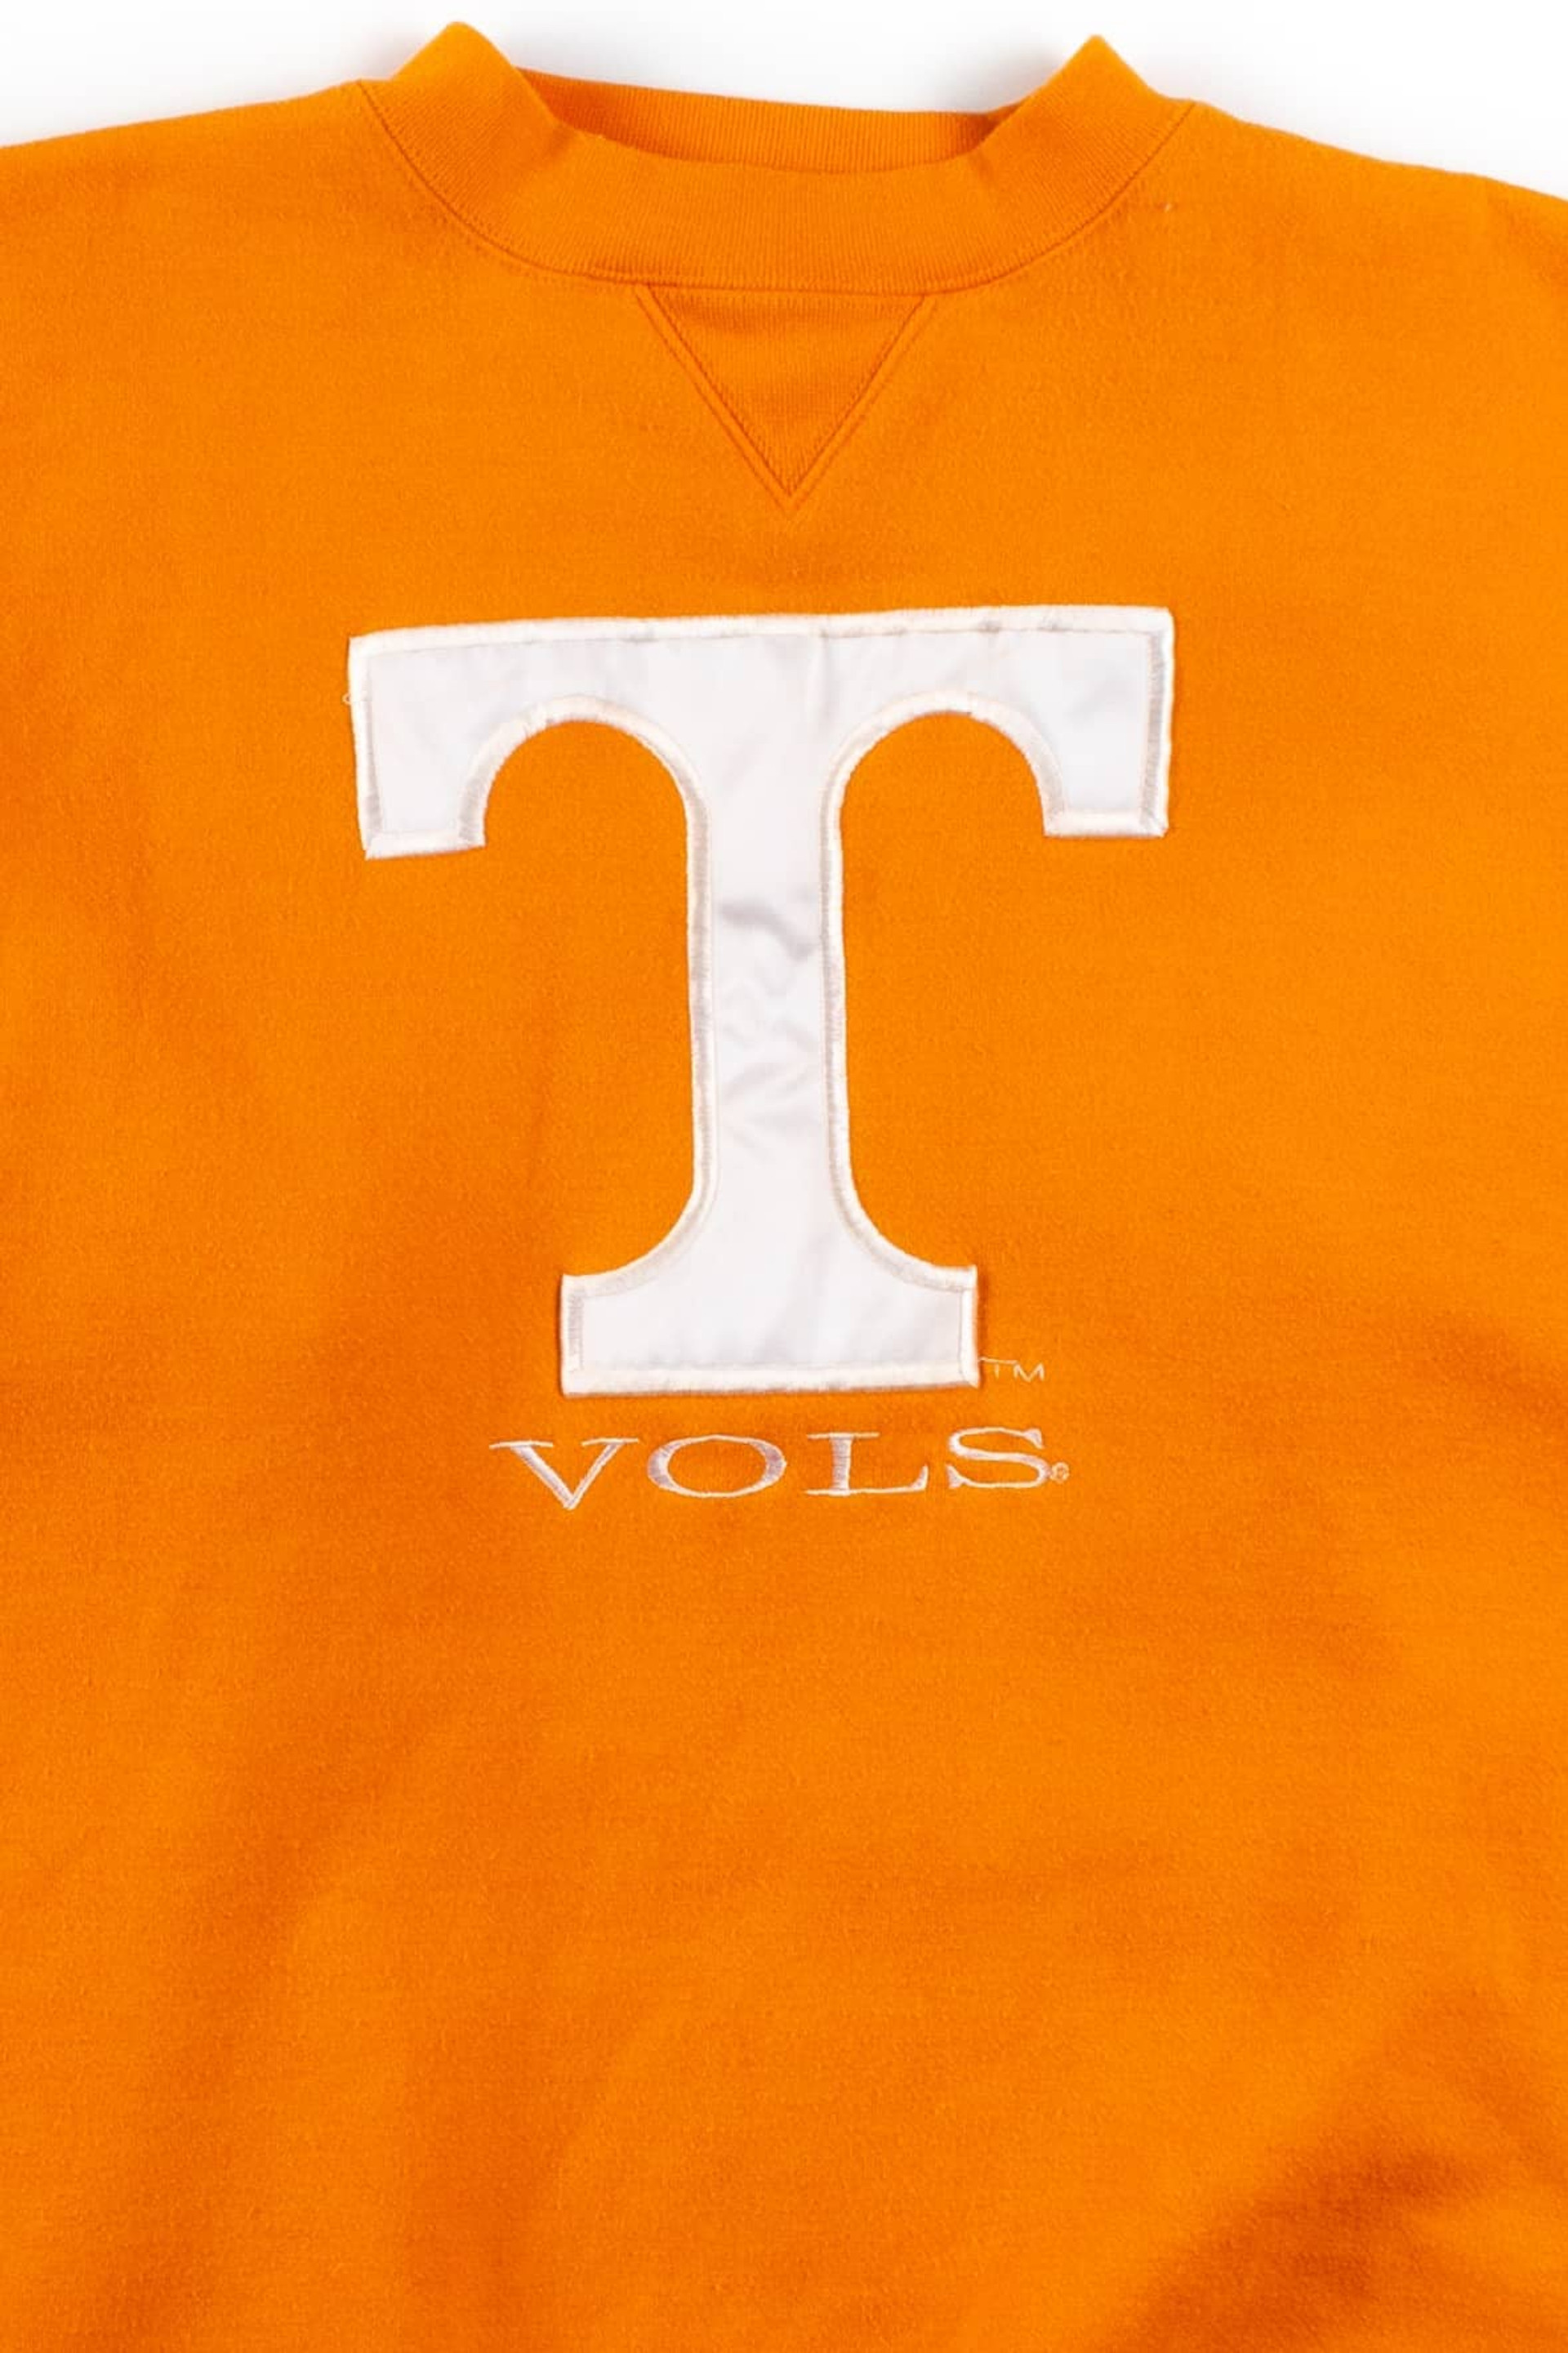 Vintage Tennessee Vols Sweatshirt - Ragstock.com